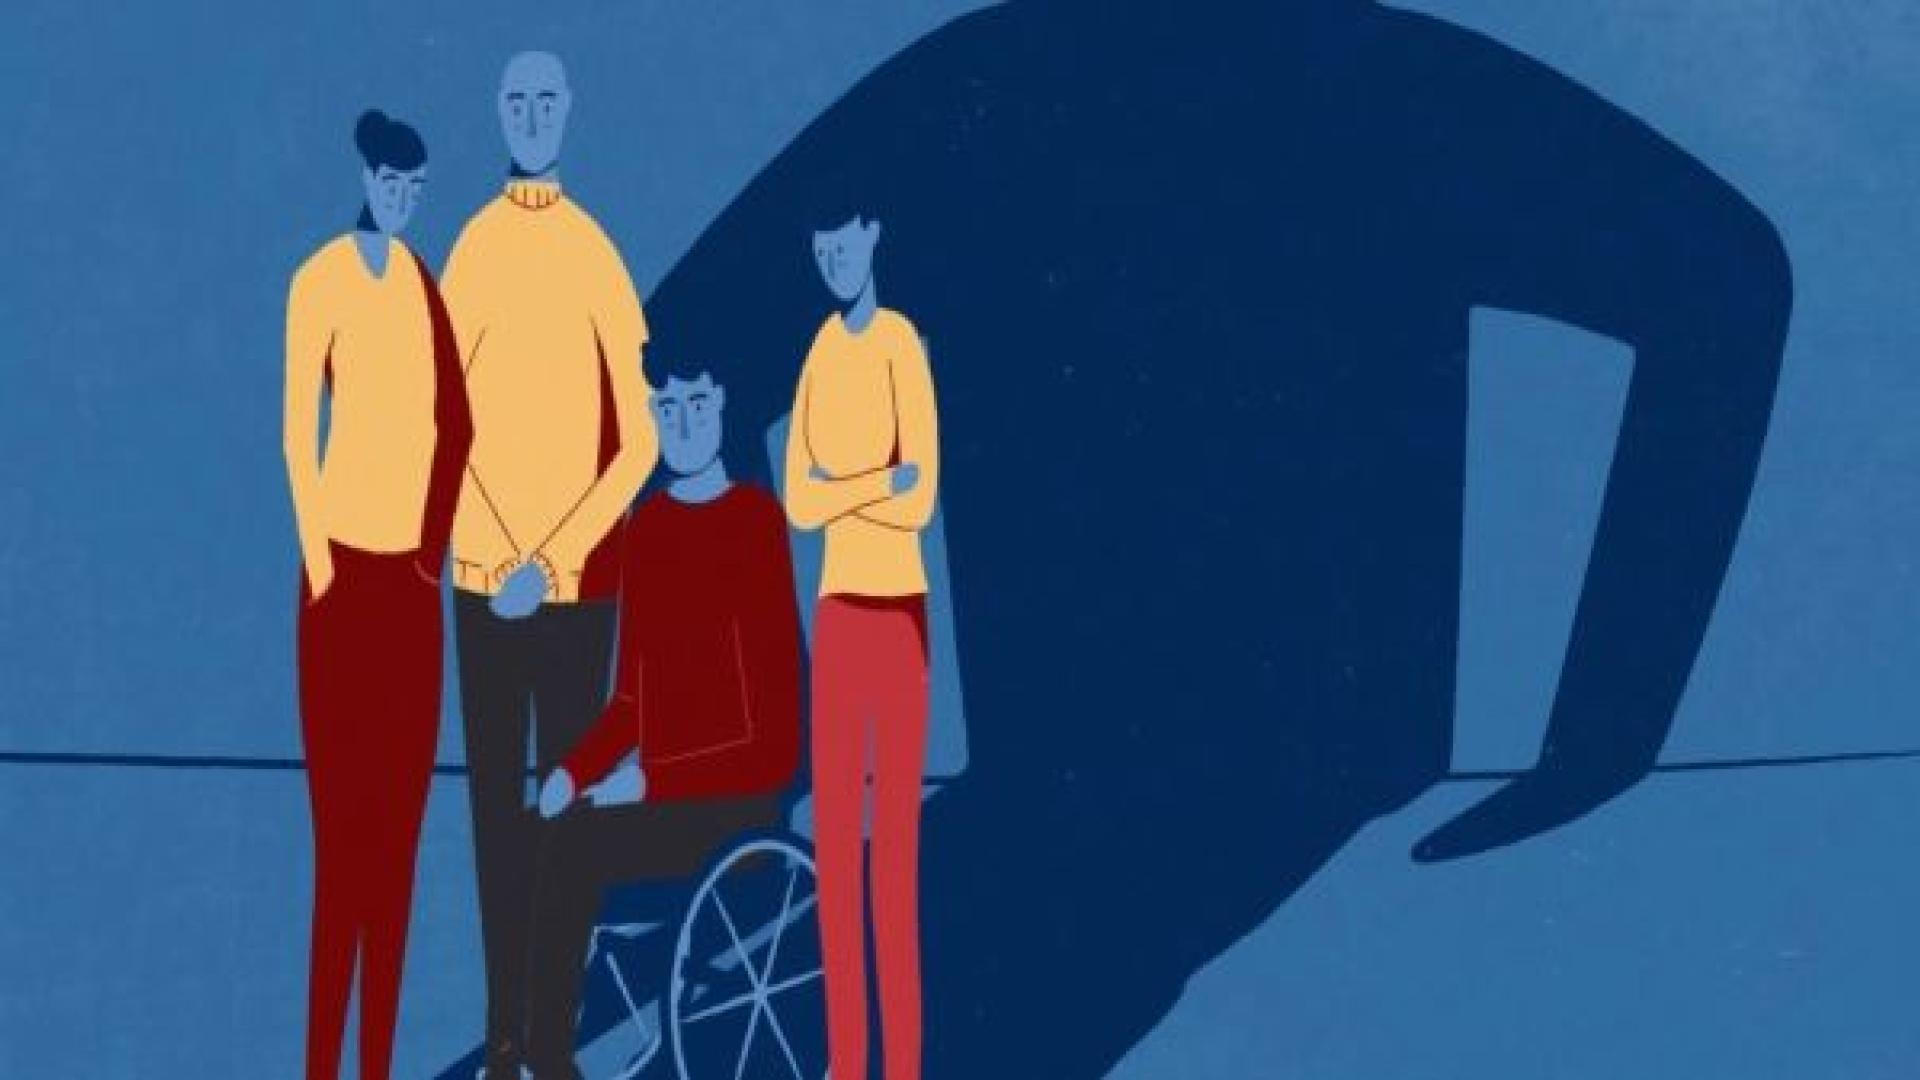 Illustratie met drie mensen die een persoon in een rolstoel bedreigen.